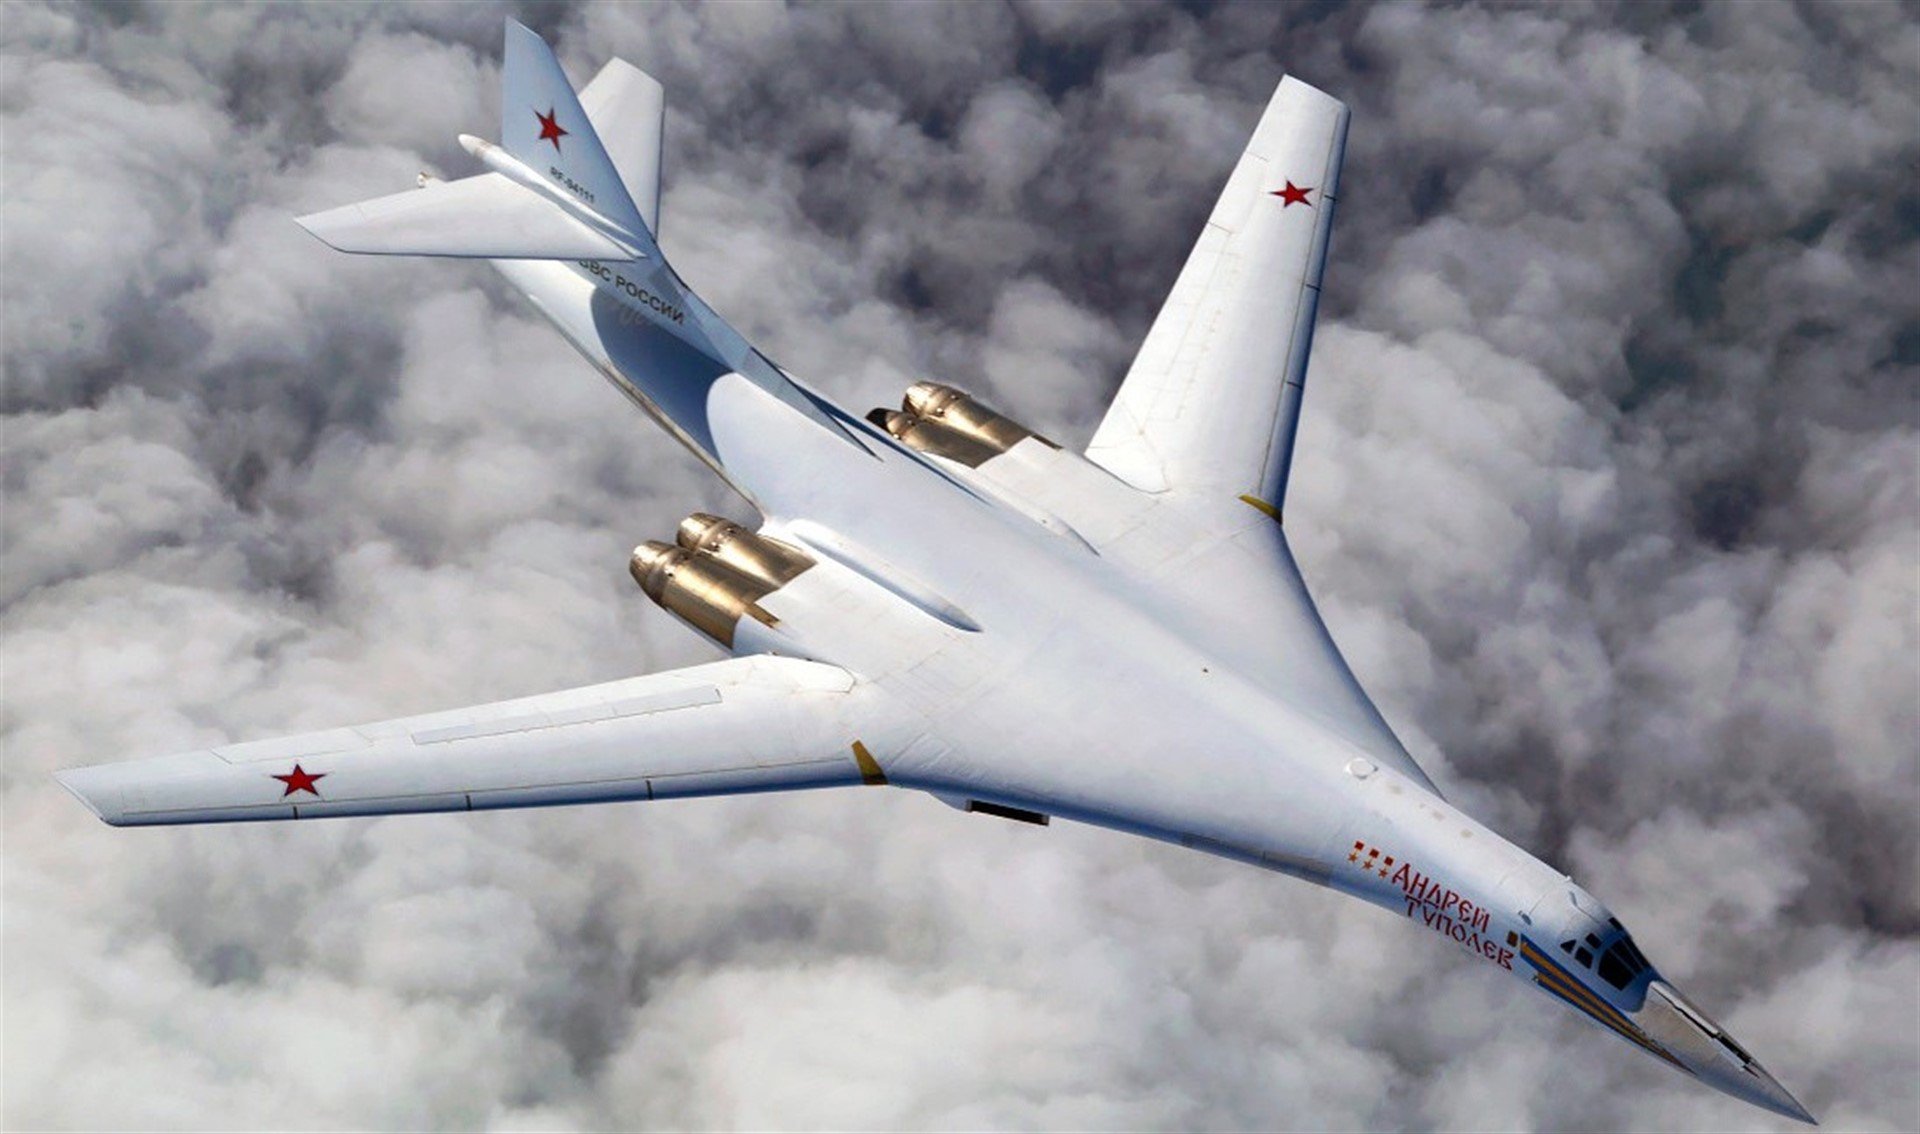 Kamazz белый лебедь. Ту-160 белый лебедь. Стратегический бомбардировщик ту-160 белый лебедь. Стратегический ракетоносец ту-160 белый лебедь. Белый лебедь самолет ту 160 м-2.